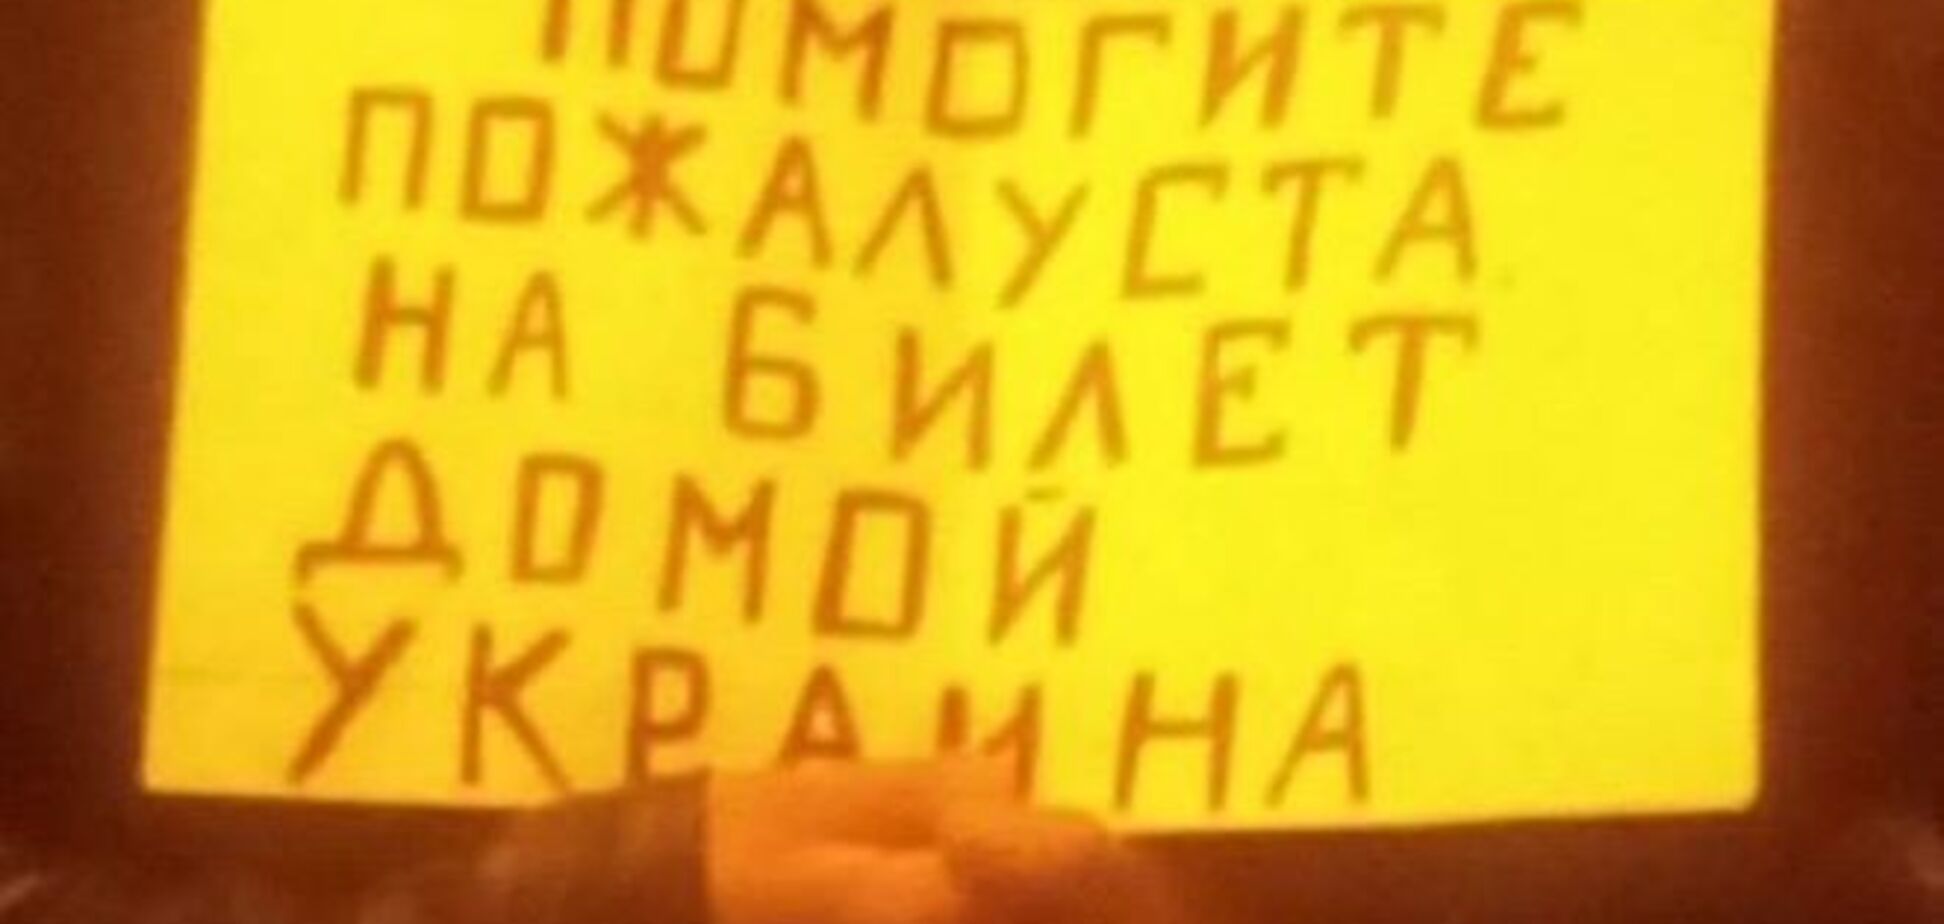 Сами мы не местные: донбасские беженцы просят в Москве подаяние на билет в Украину - фотофакт